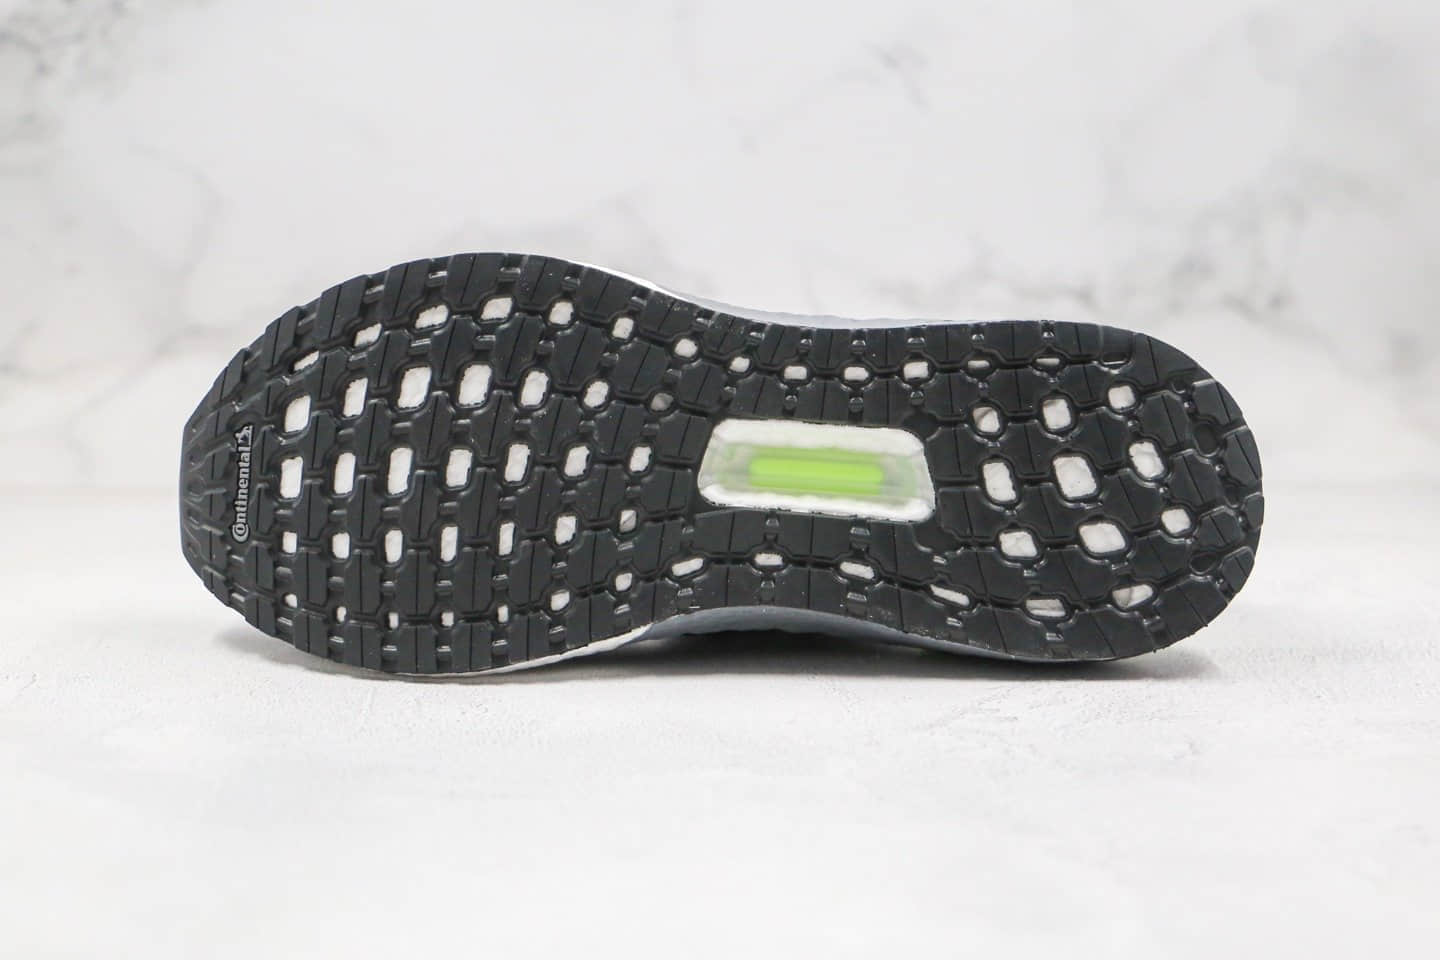 阿迪达斯Adidas Ultra Boost 20纯原版本爆米花跑鞋UB6.0黑绿色原档案数据开发真爆米花缓震大底 货号：FY3452